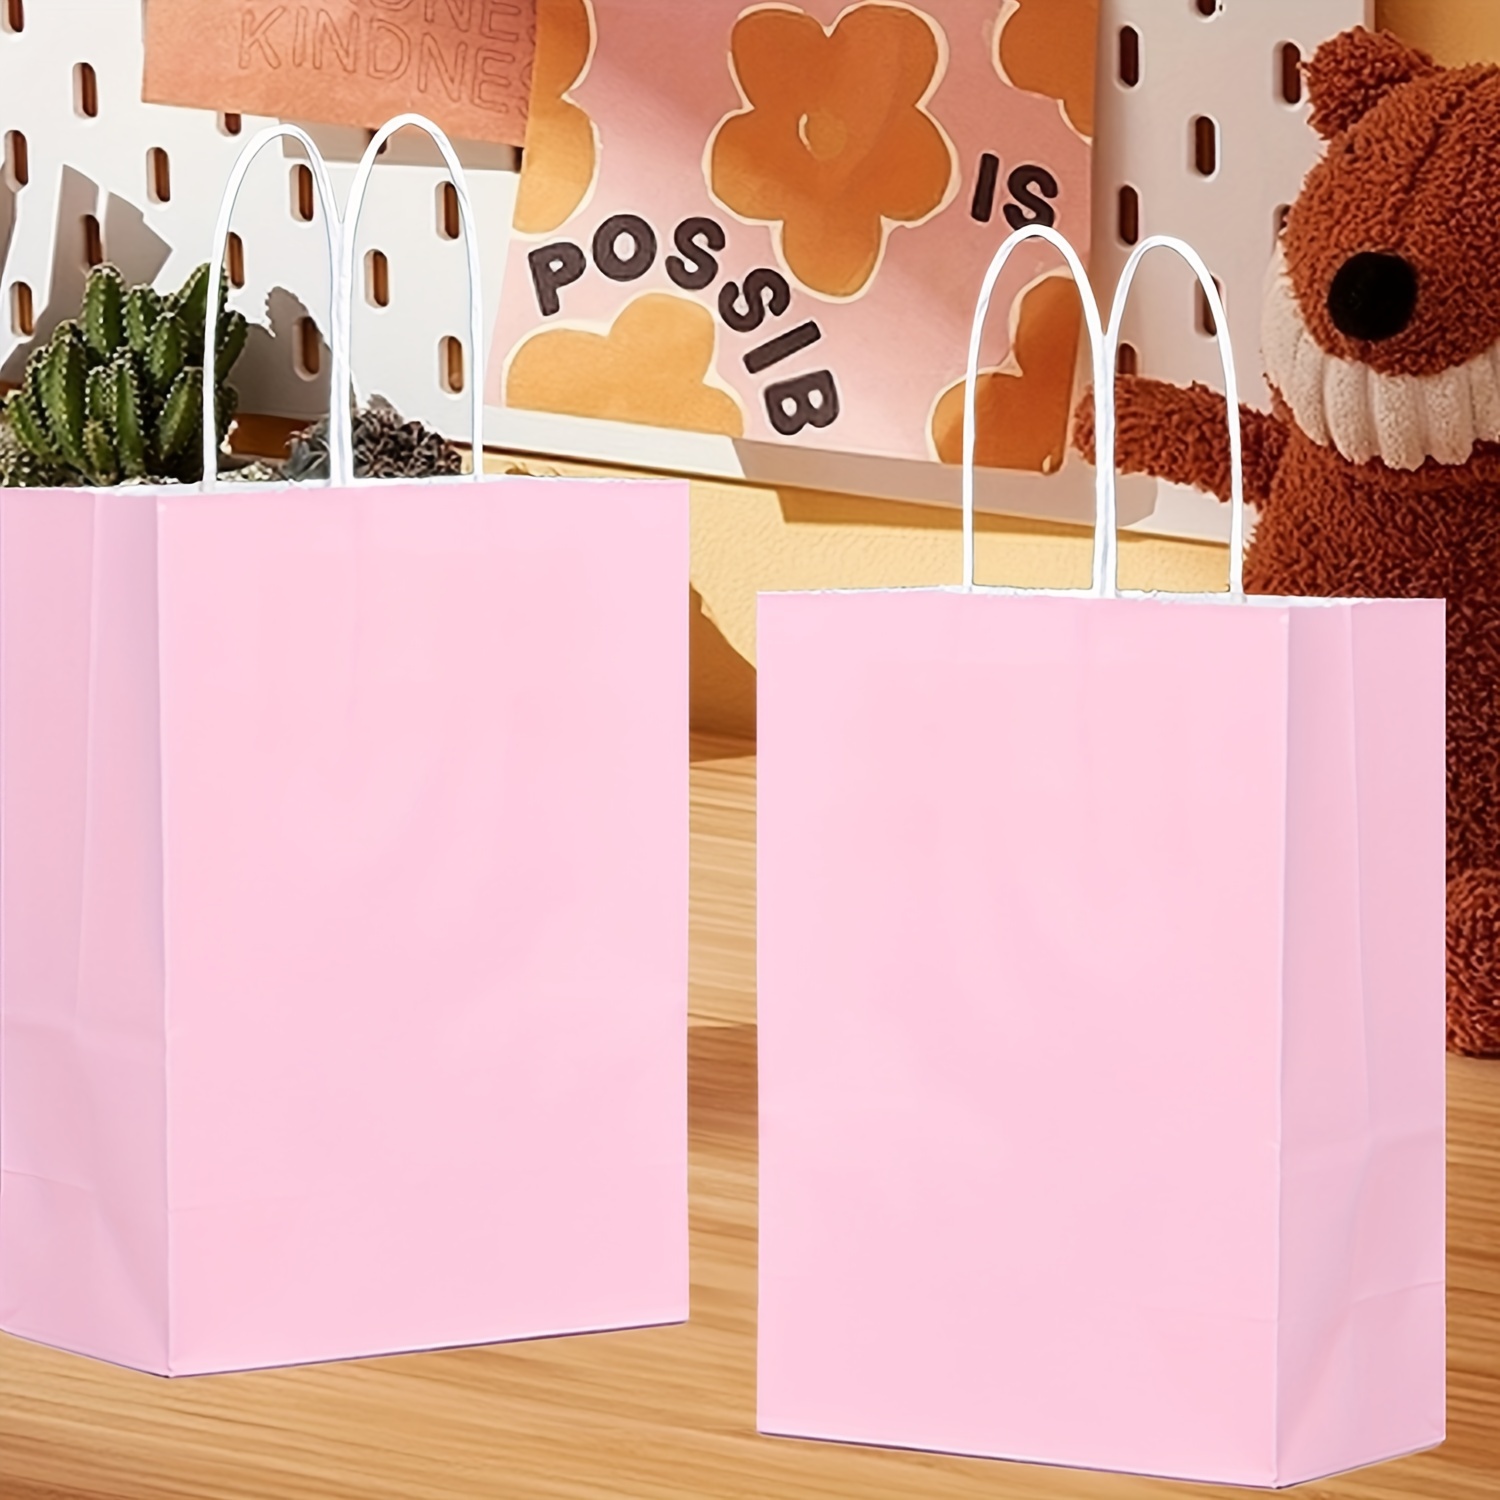  Mighty Mojo Octonauts - Bolsas de papel para fiestas, paquete  de 10 bolsas temáticas para fiestas de cumpleaños infantiles, bolsas de  regalo, bolsas de regalo, bolsas de botín, suministros de fiesta, 